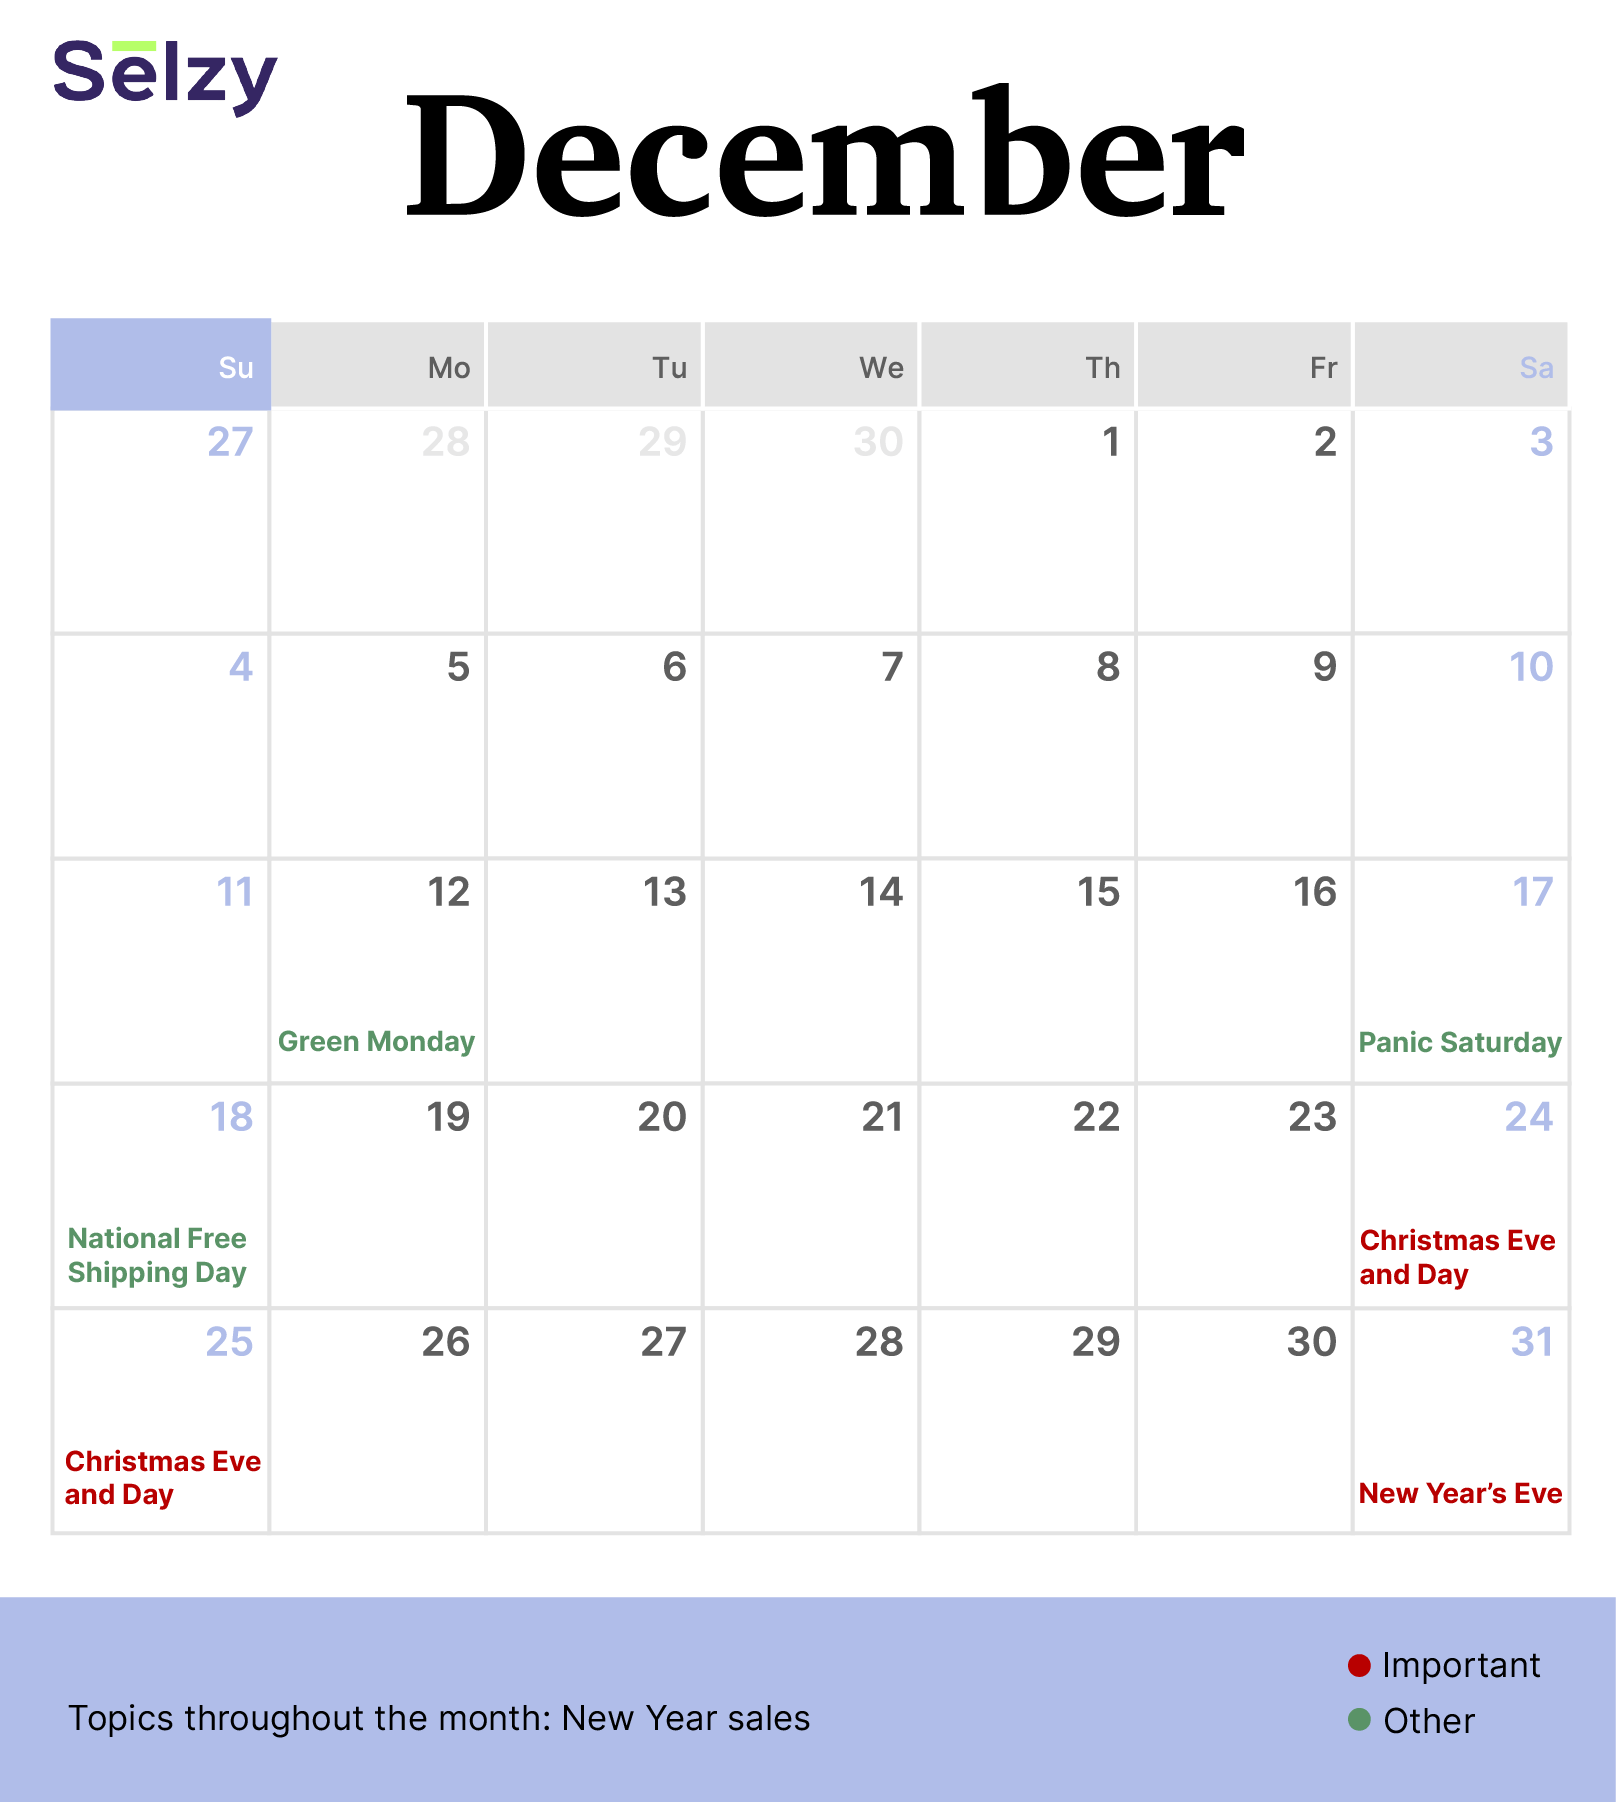 Holiday Marketing Calendar – December